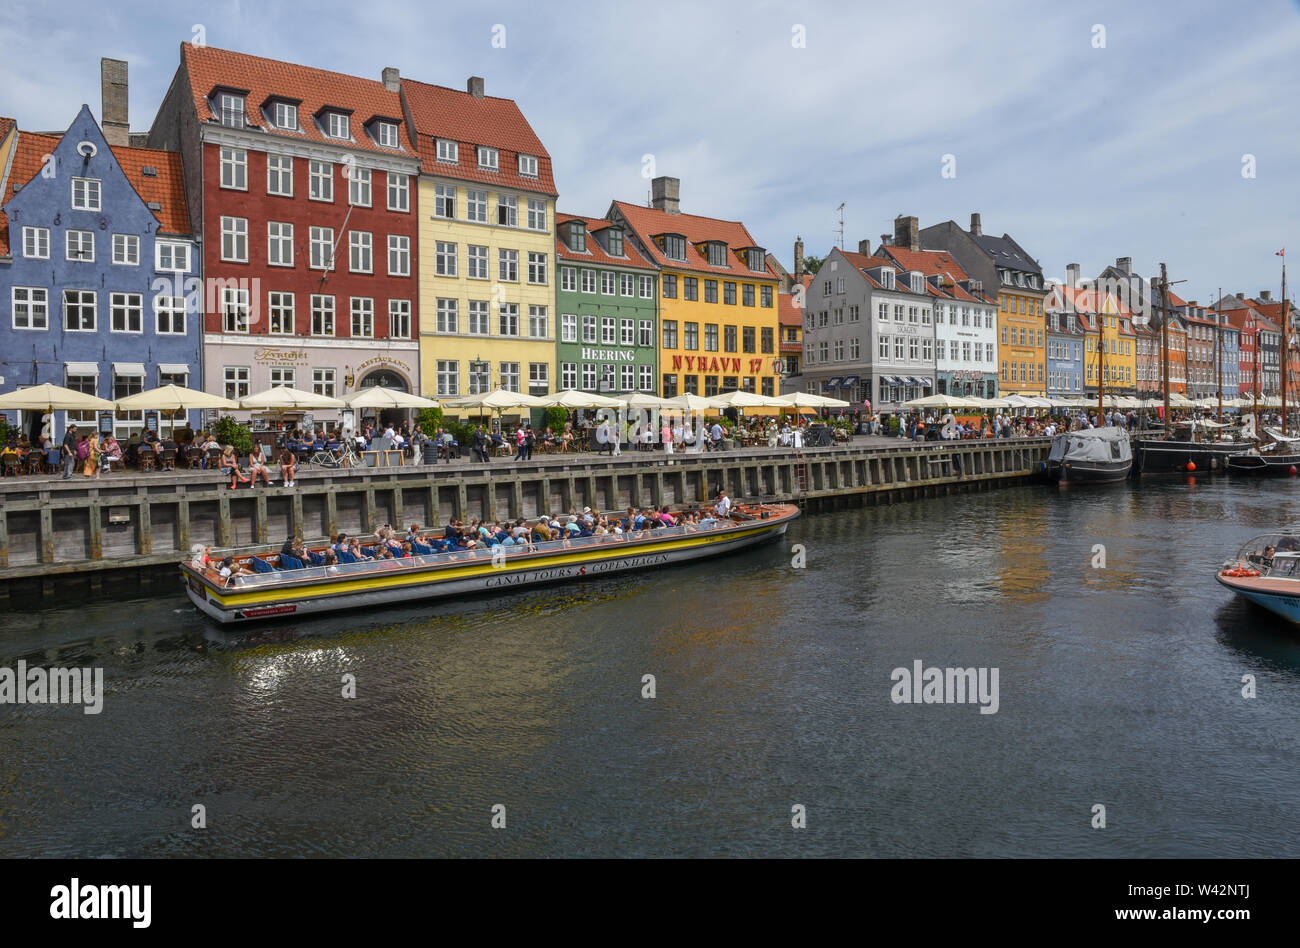 Copenhagen, Denmark - the Nyhavn canal at Copenhagen on Denmark Stock Photo